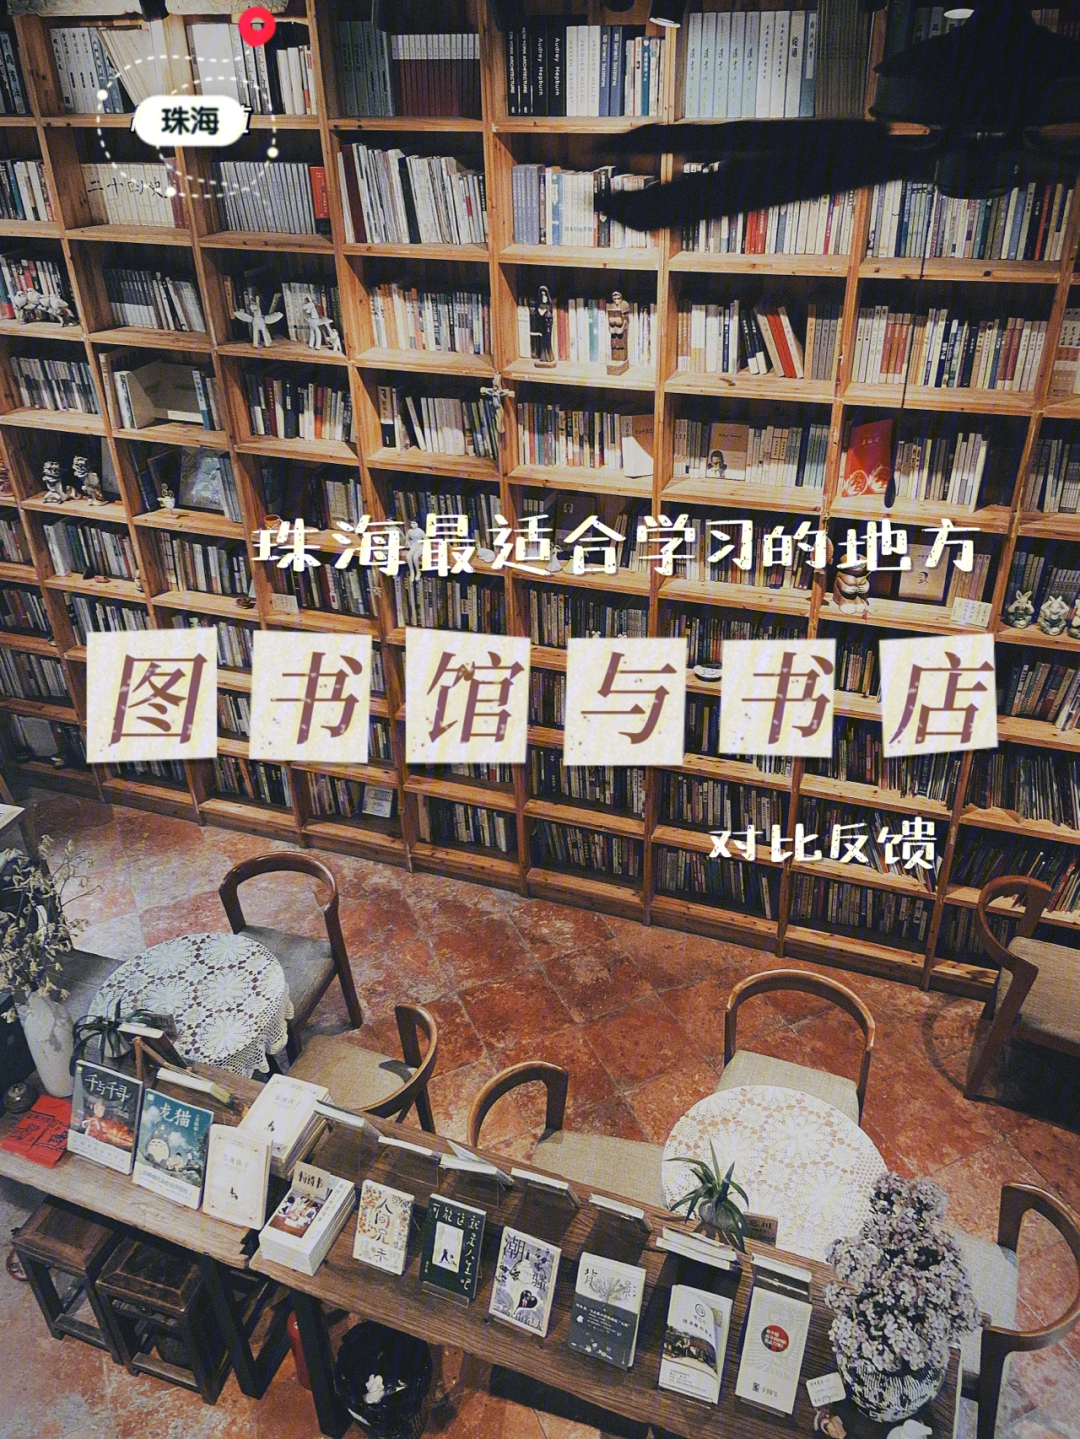 图书馆管理系统_21届北京国际图书博览会新疆馆_珠海图书馆